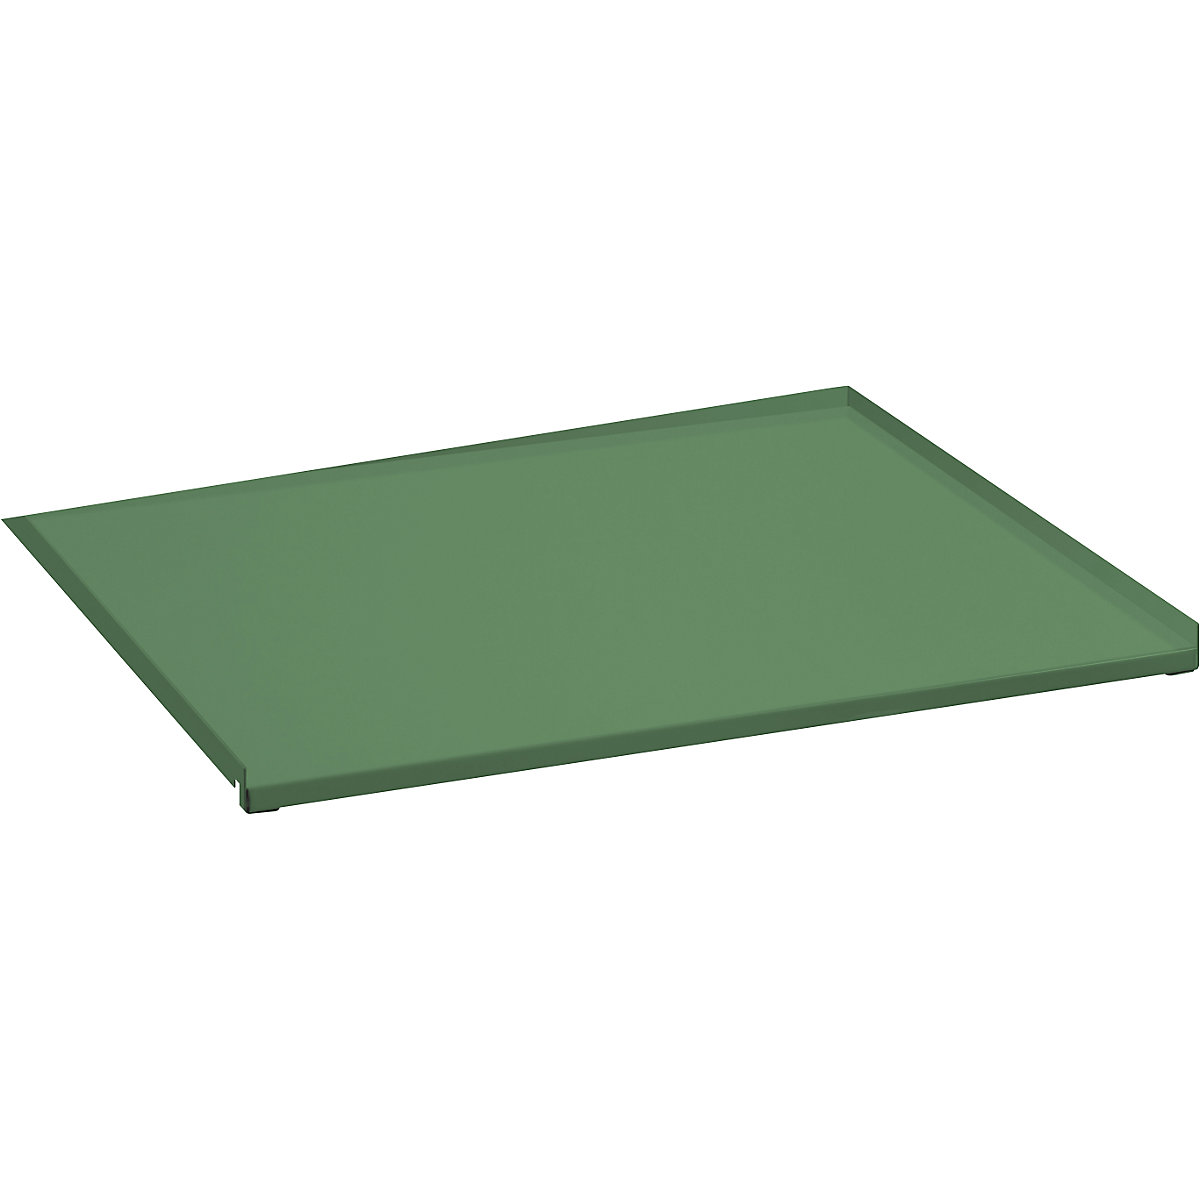 Recouvrement en tôle pour tablette coulissante – LISTA, extraction partielle, pour l x p 890 x 860 mm, vert réséda-2